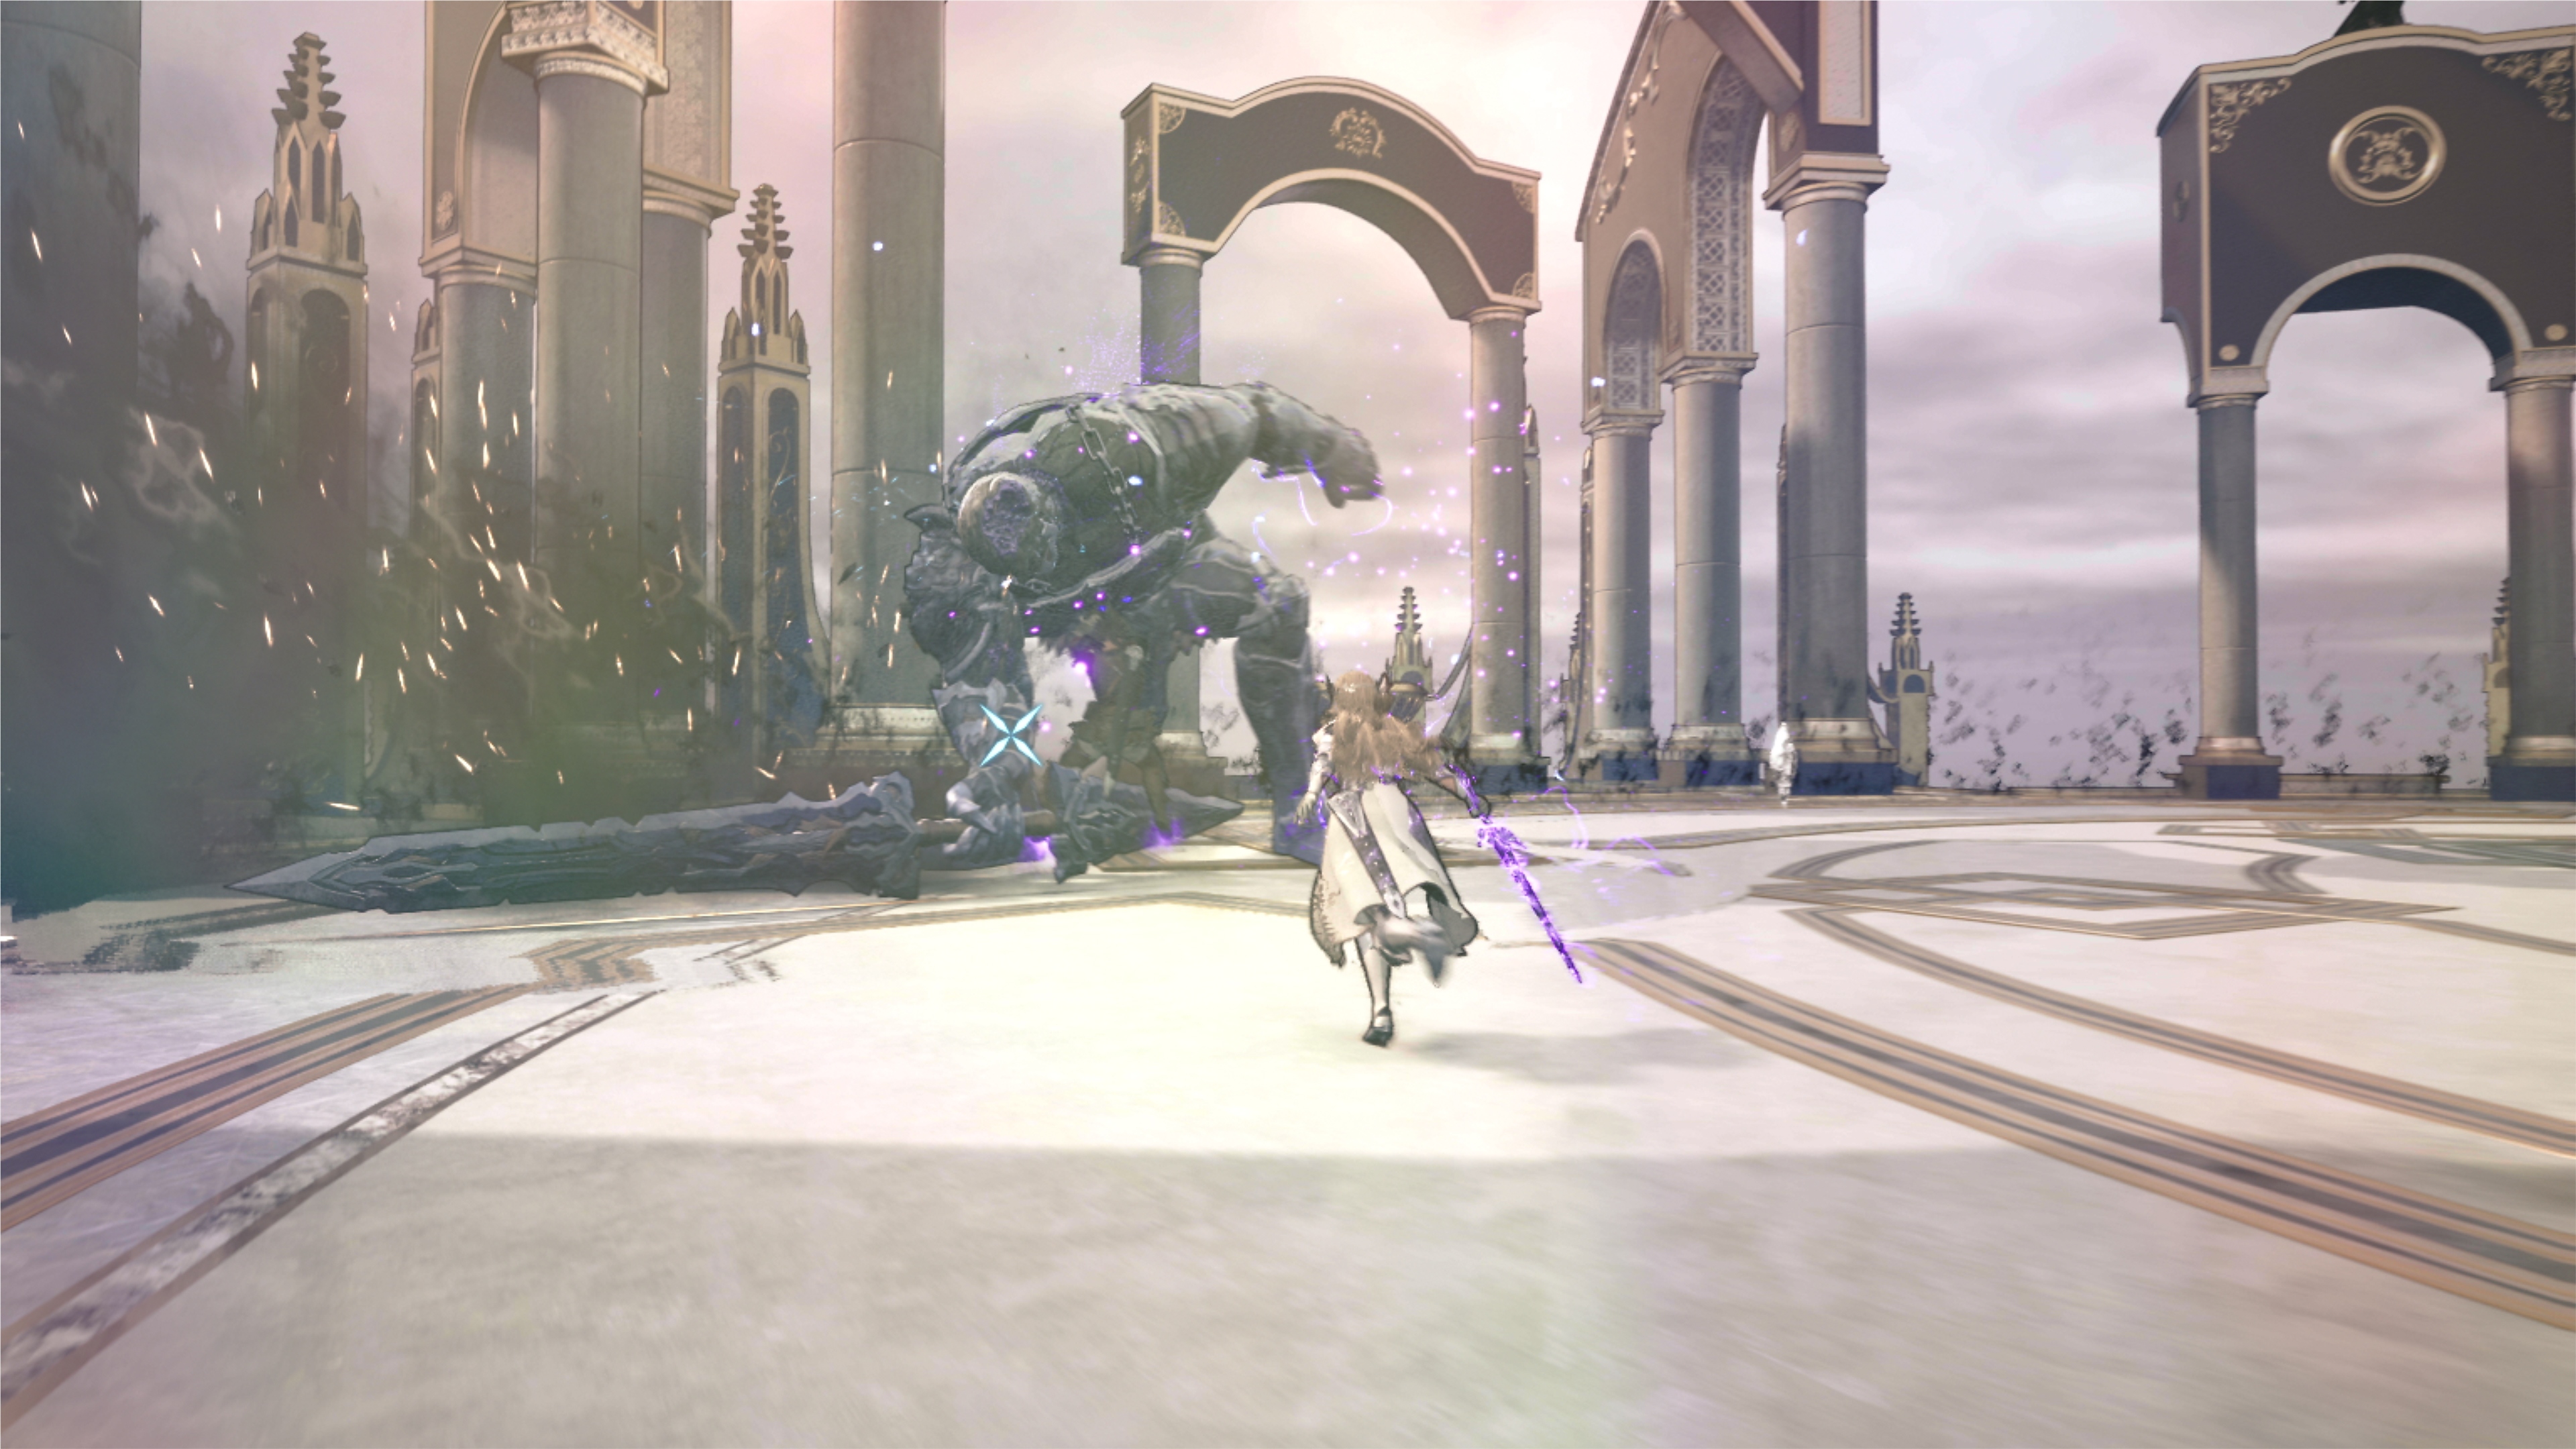 لقطة شاشة للعبة Valkyrie Elysium تعرض أسلوب القتال